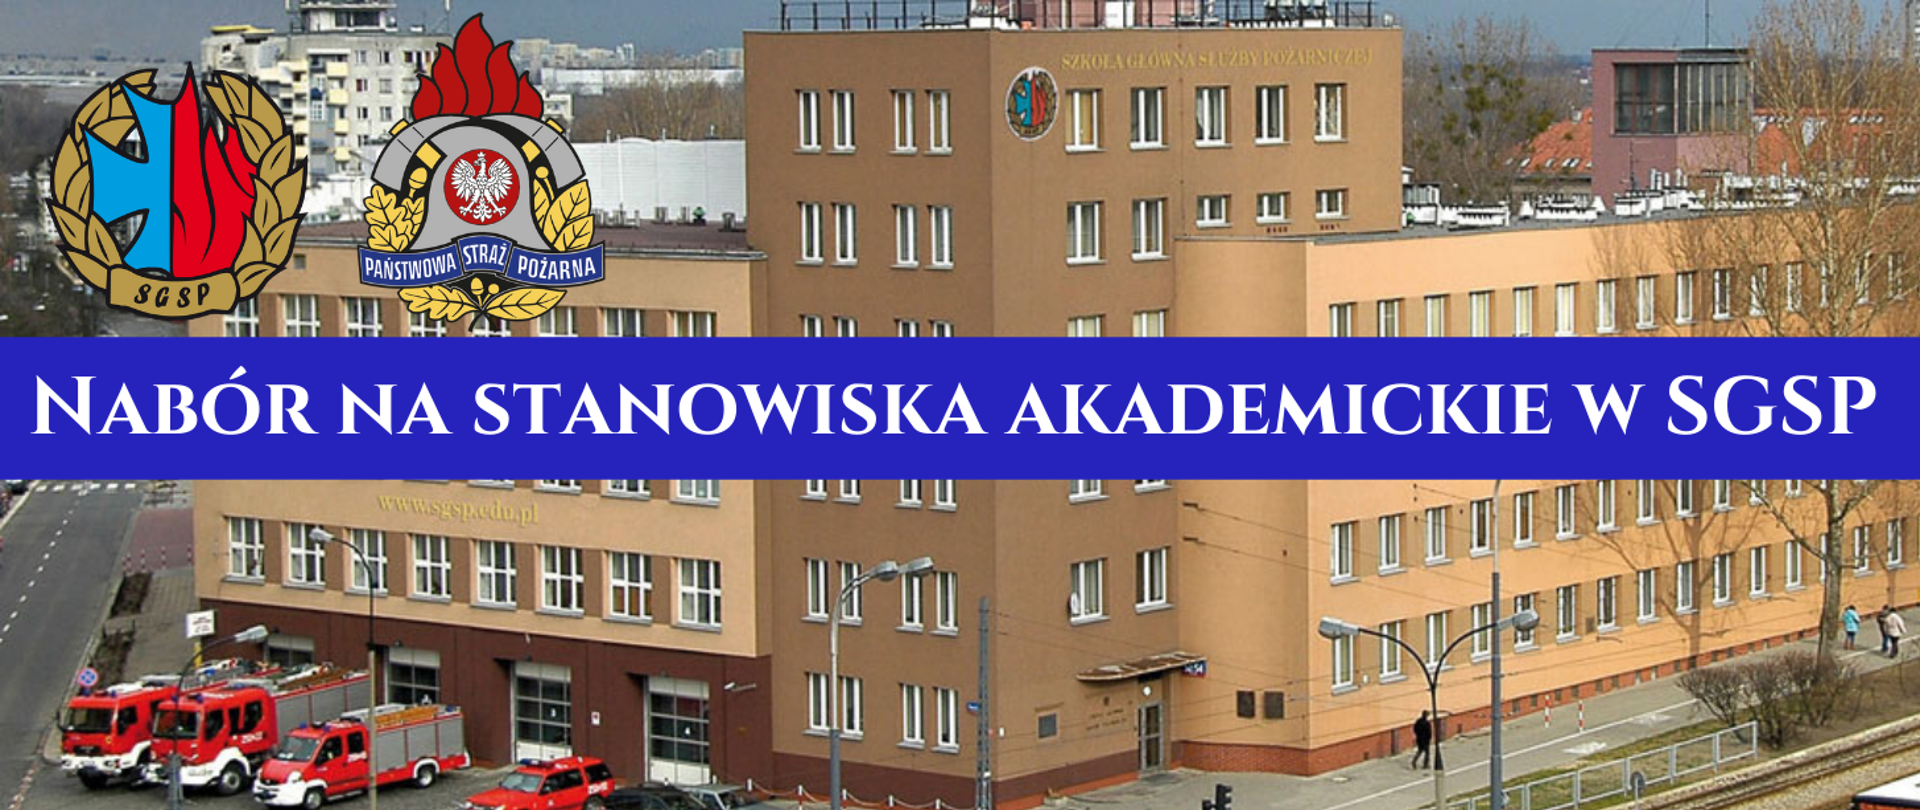 Baner z widokiem z góry Szkoły Głównej Służby Pożarniczej w Warszawie, widoczne logo SGSP i PSP z napisem nabór na stanowiska akademicka w SGSP